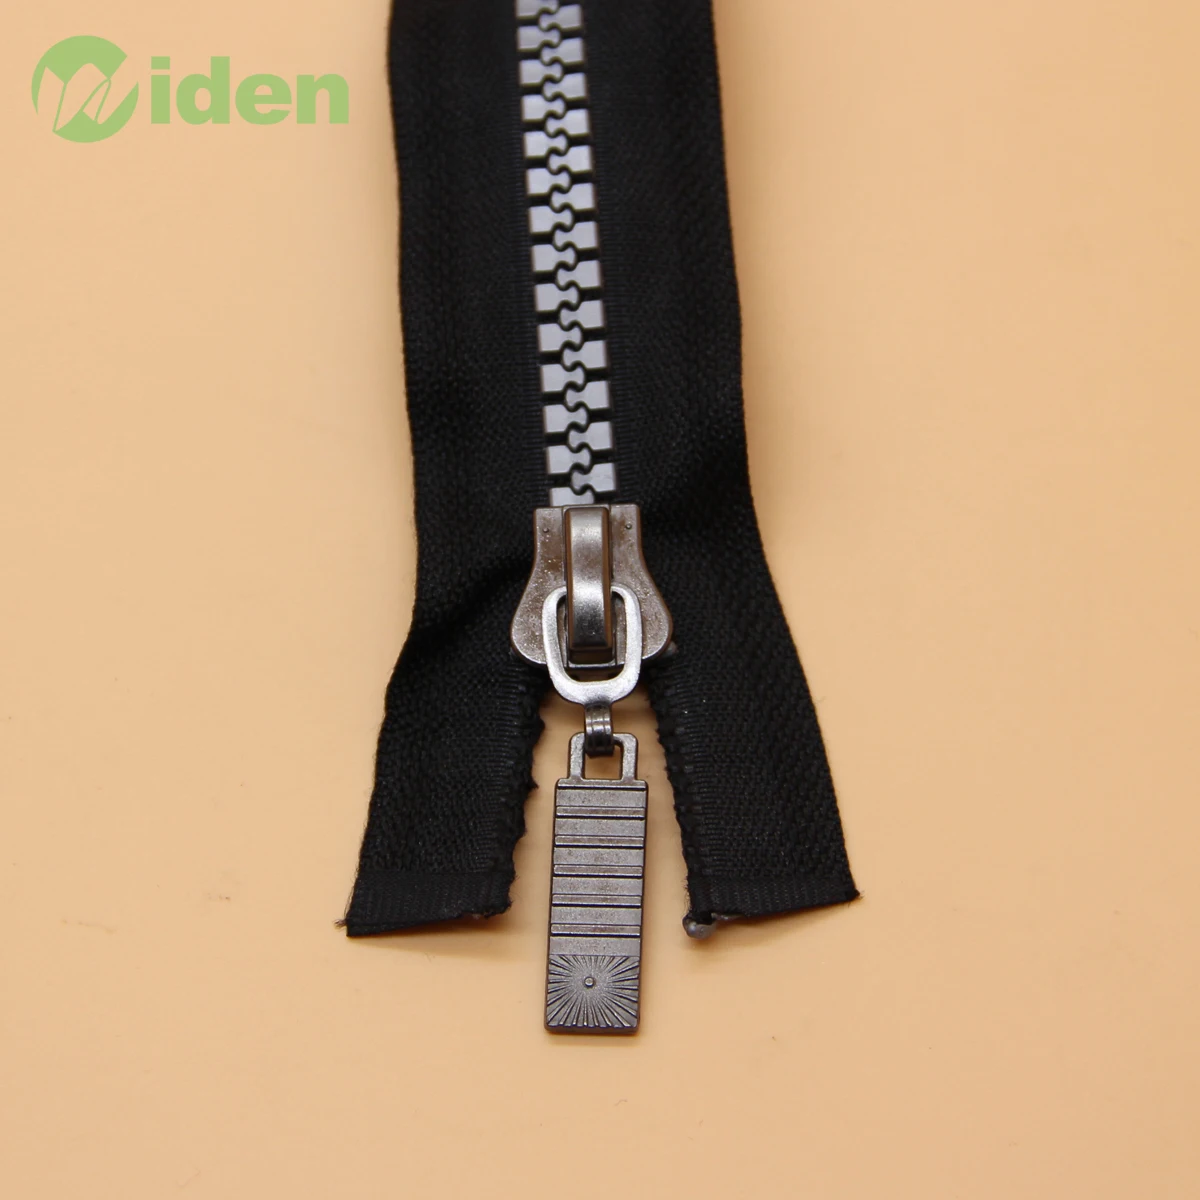 No. 8 Resin Zipper With Metal Puller Long Chain Vislon Zipper